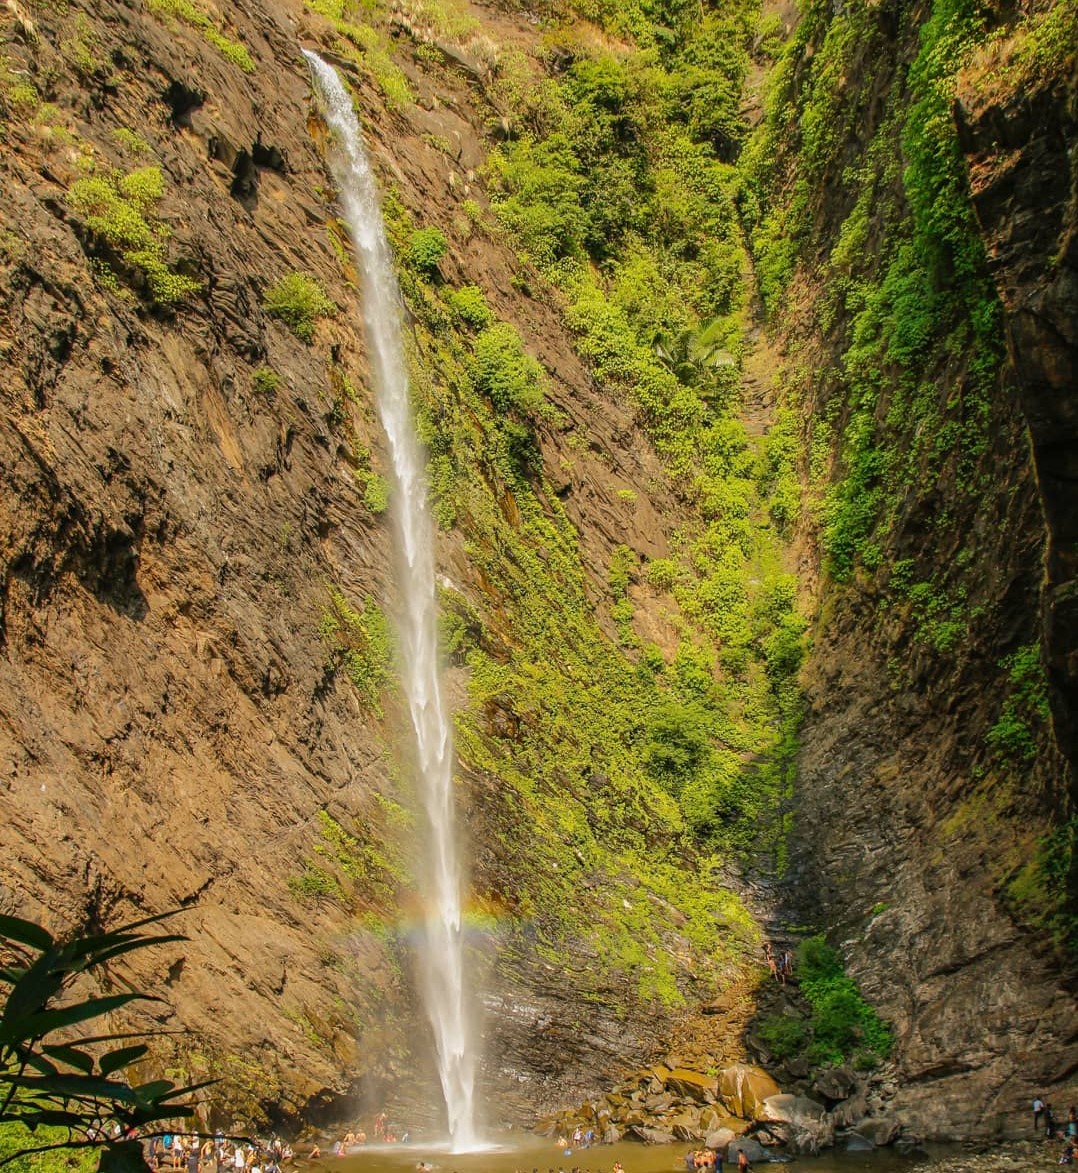 Koodlu Theertha Falls near Varanga Lake Basadi